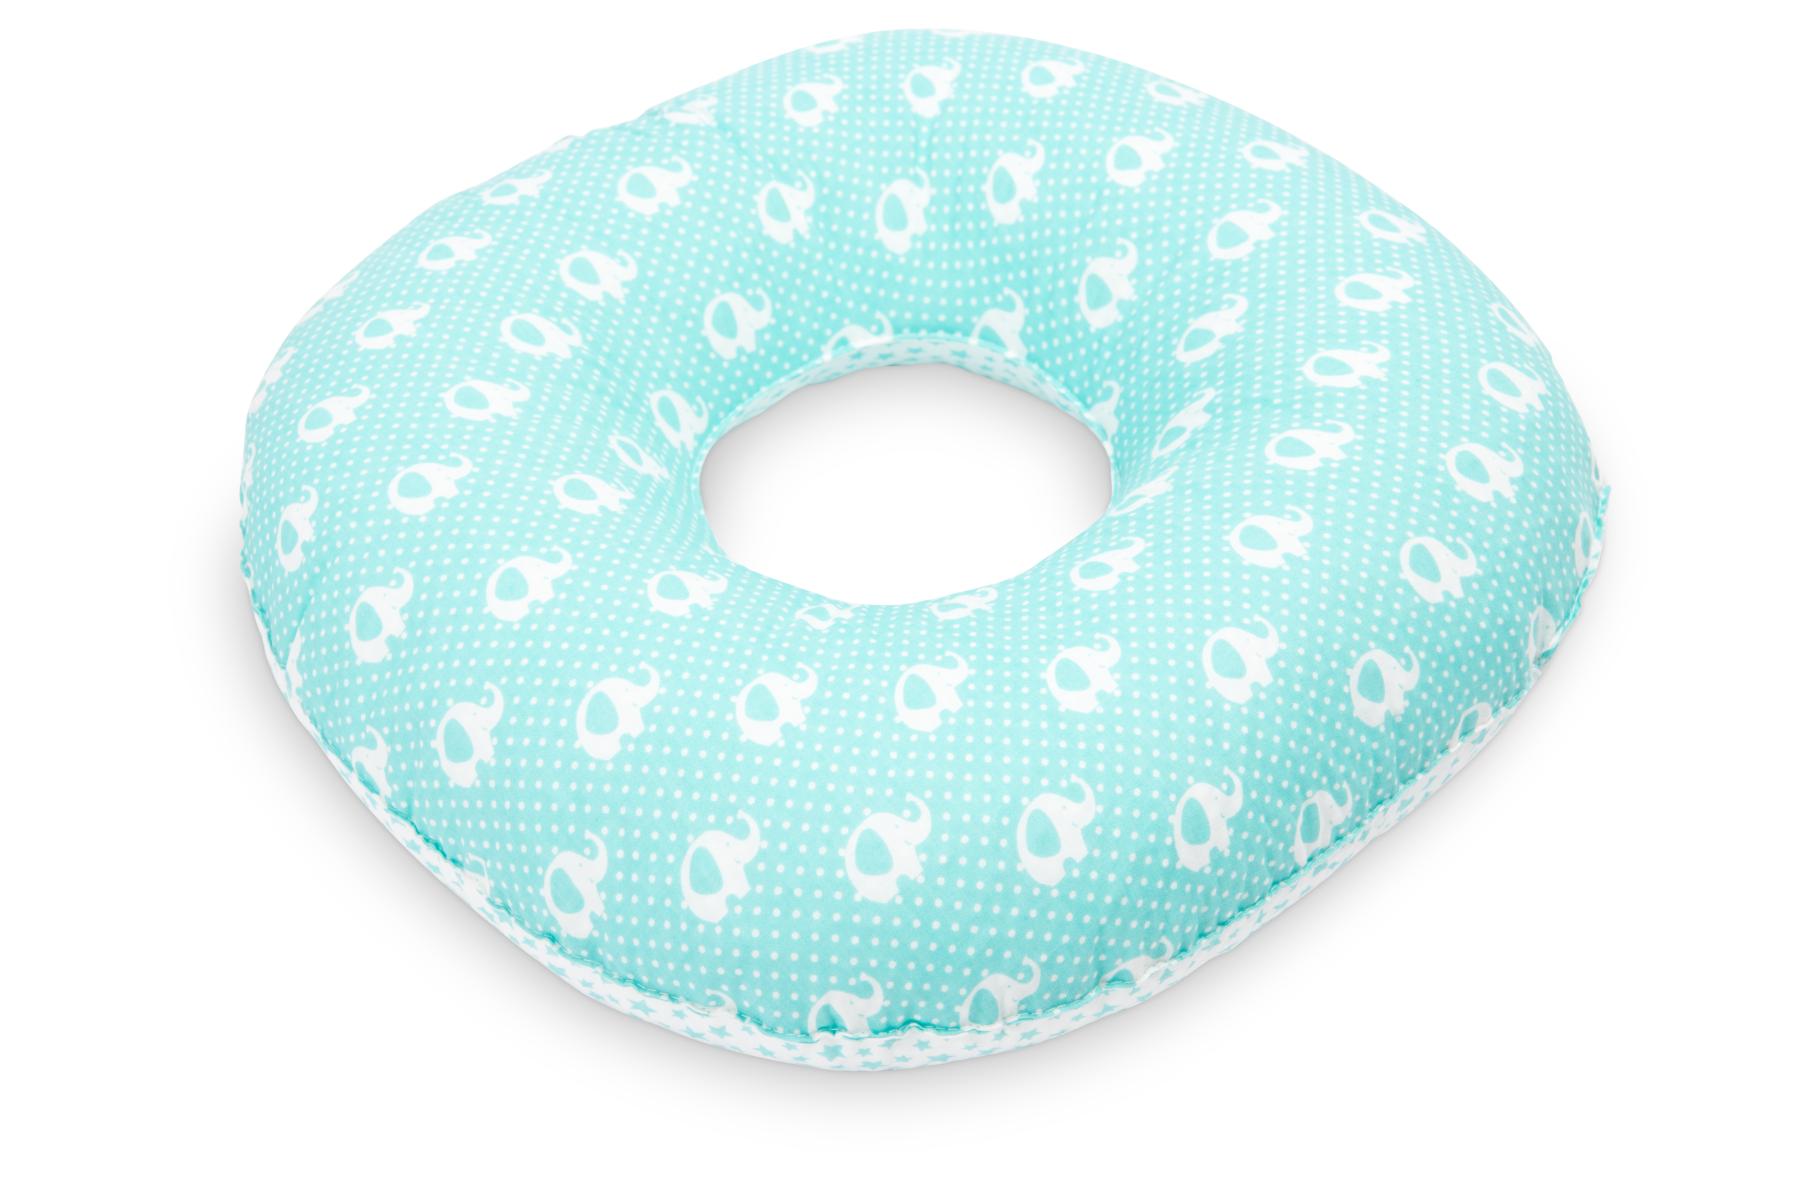 Postnatal Pillow – elephants mint